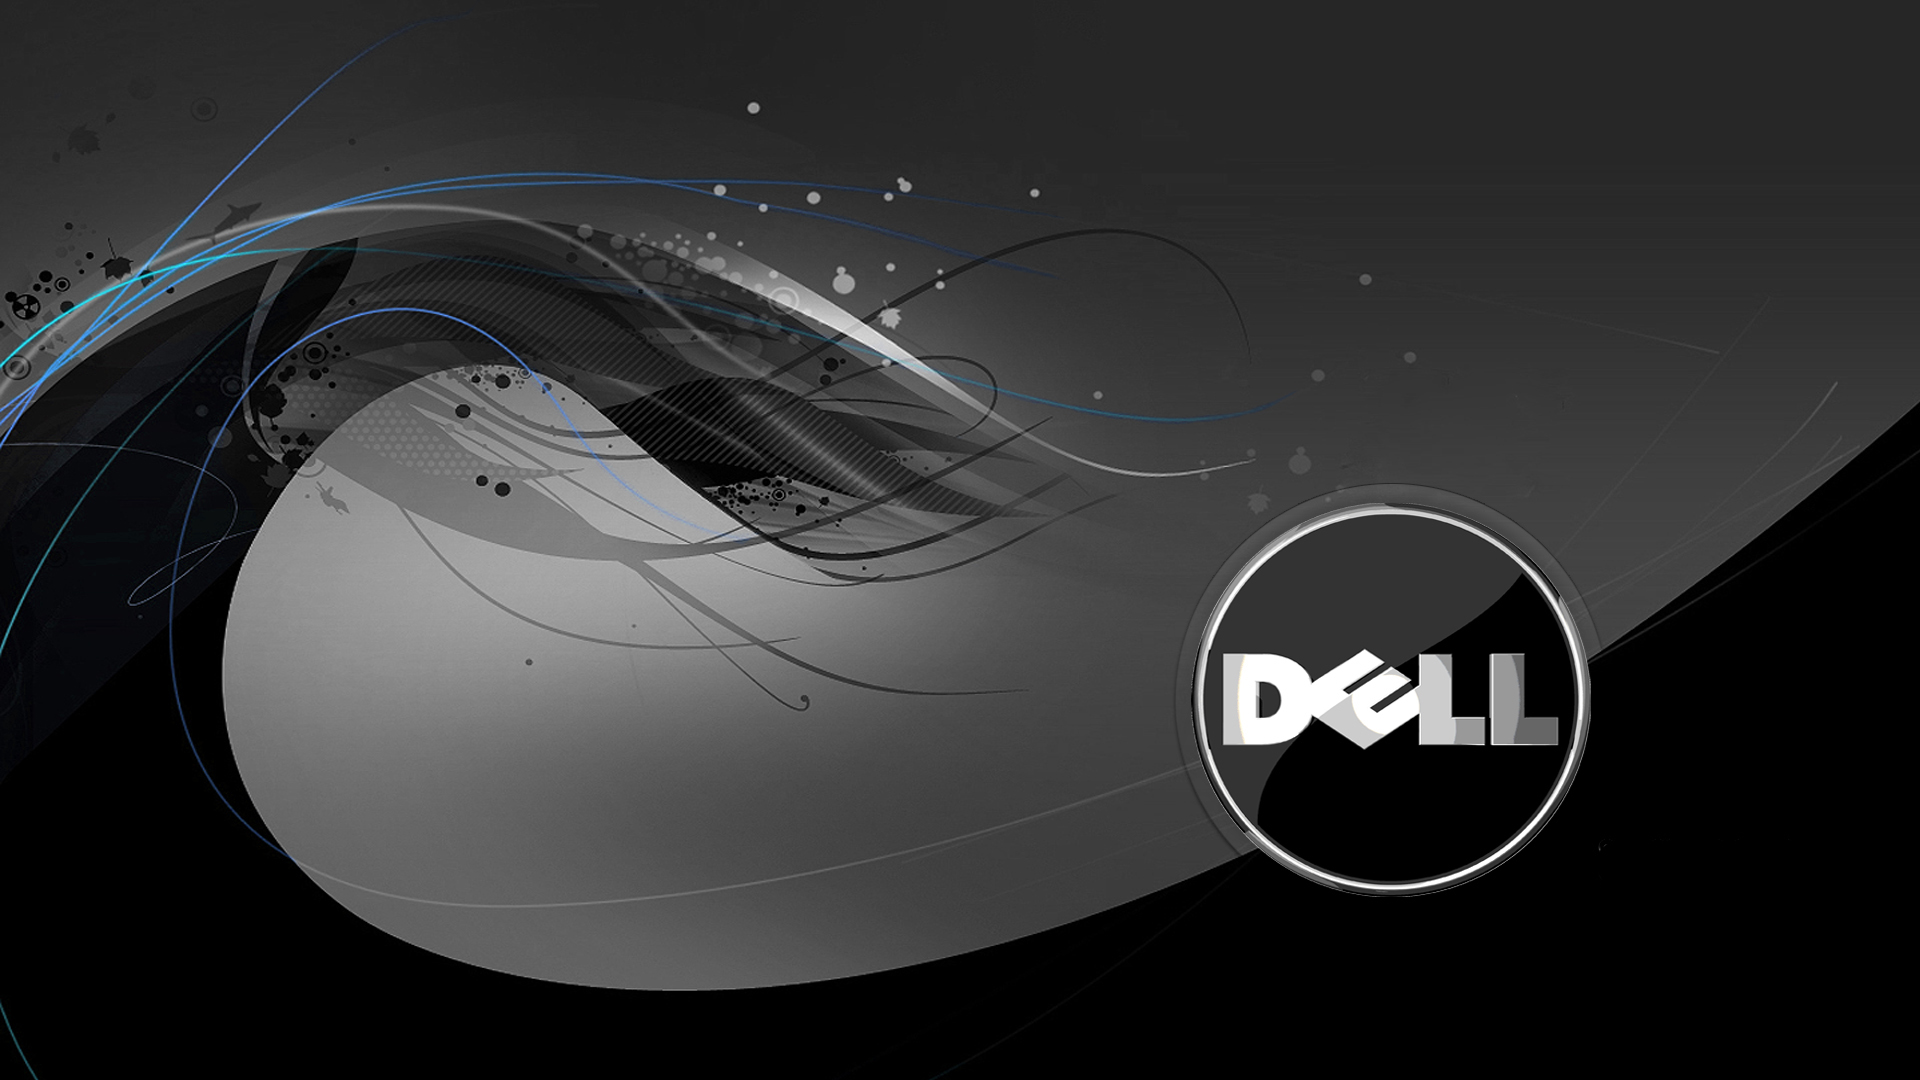 Hỗ trợ và hợp đồng bảo trì Dell là một trong những dịch vụ chất lượng hàng đầu, mang lại sự yên tâm và tiện lợi cho khách hàng sử dụng sản phẩm Dell. Hãy đến với chúng tôi để biết thêm thông tin về các gói bảo trì và được tư vấn các giải pháp phù hợp với nhu cầu của bạn.